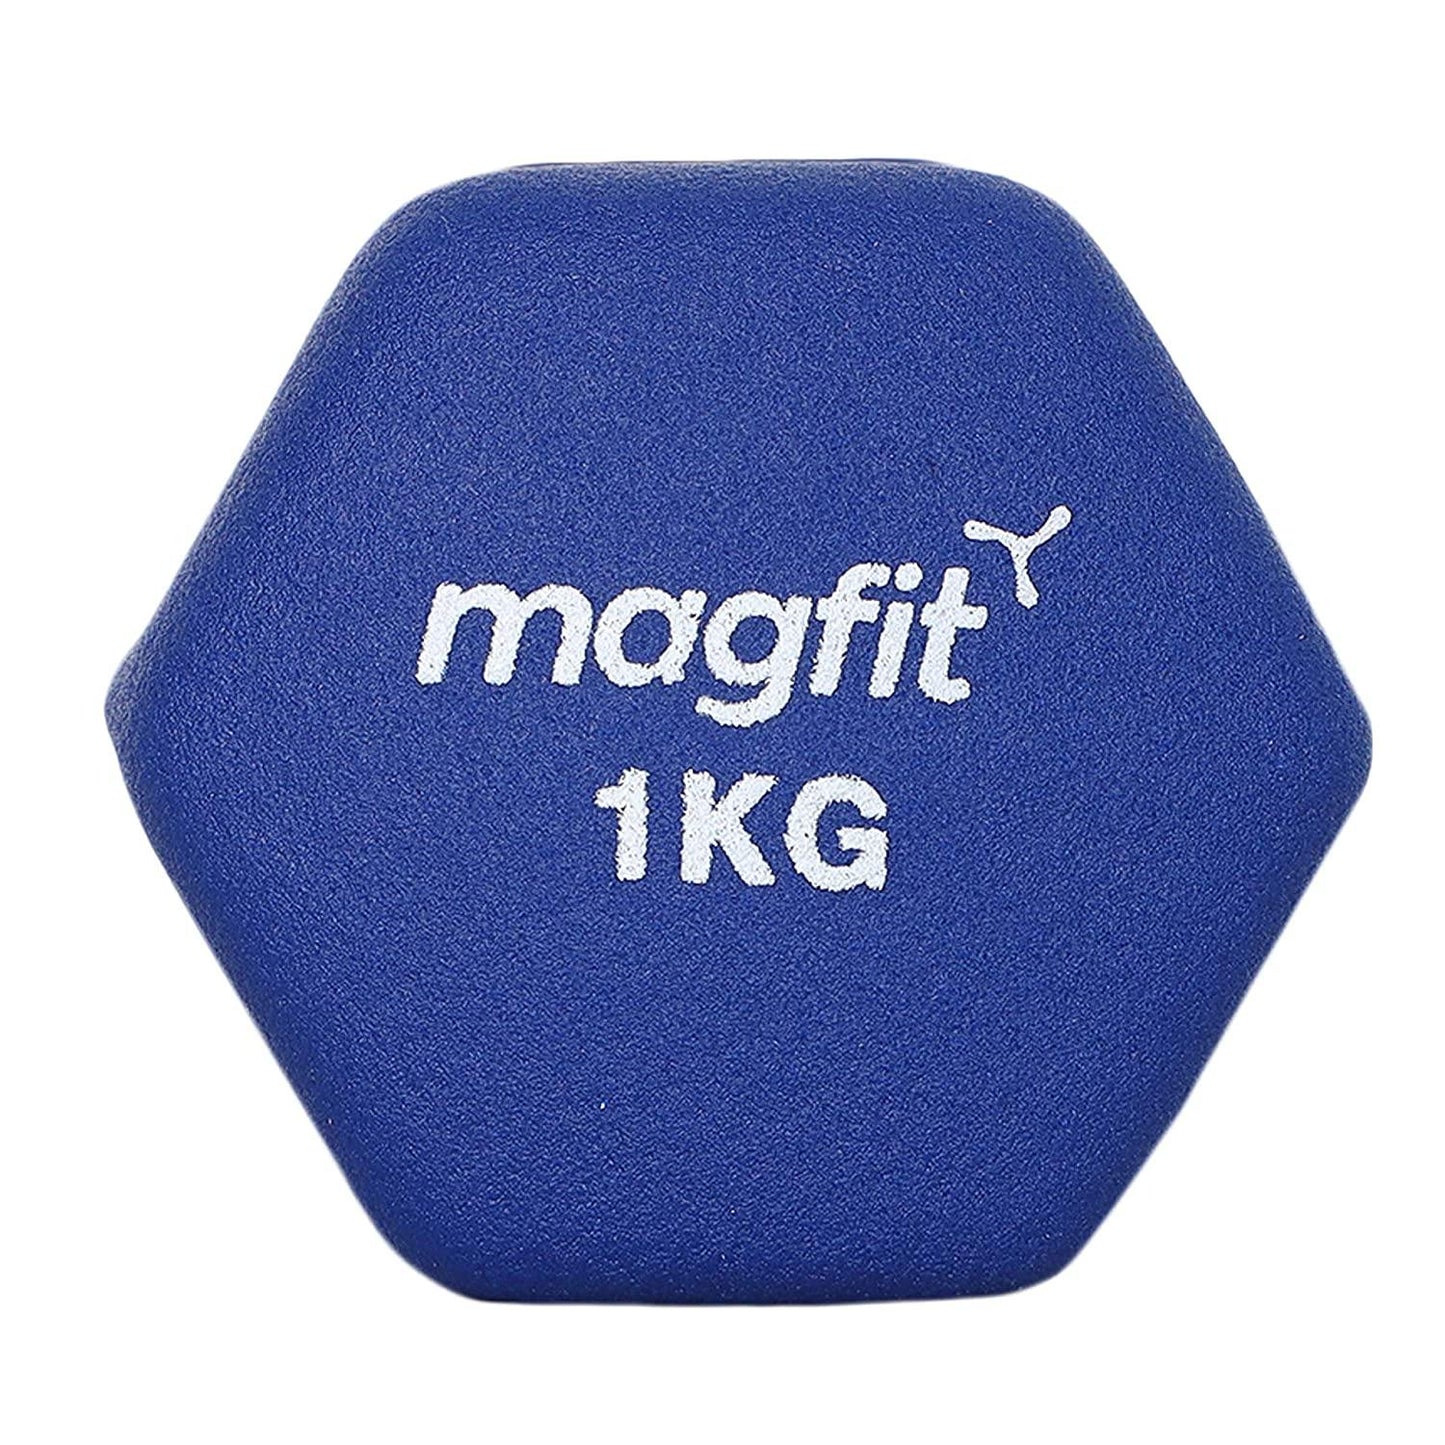 Magfit Neoprene Dumbell (Pack of 1) - Best Price online Prokicksports.com